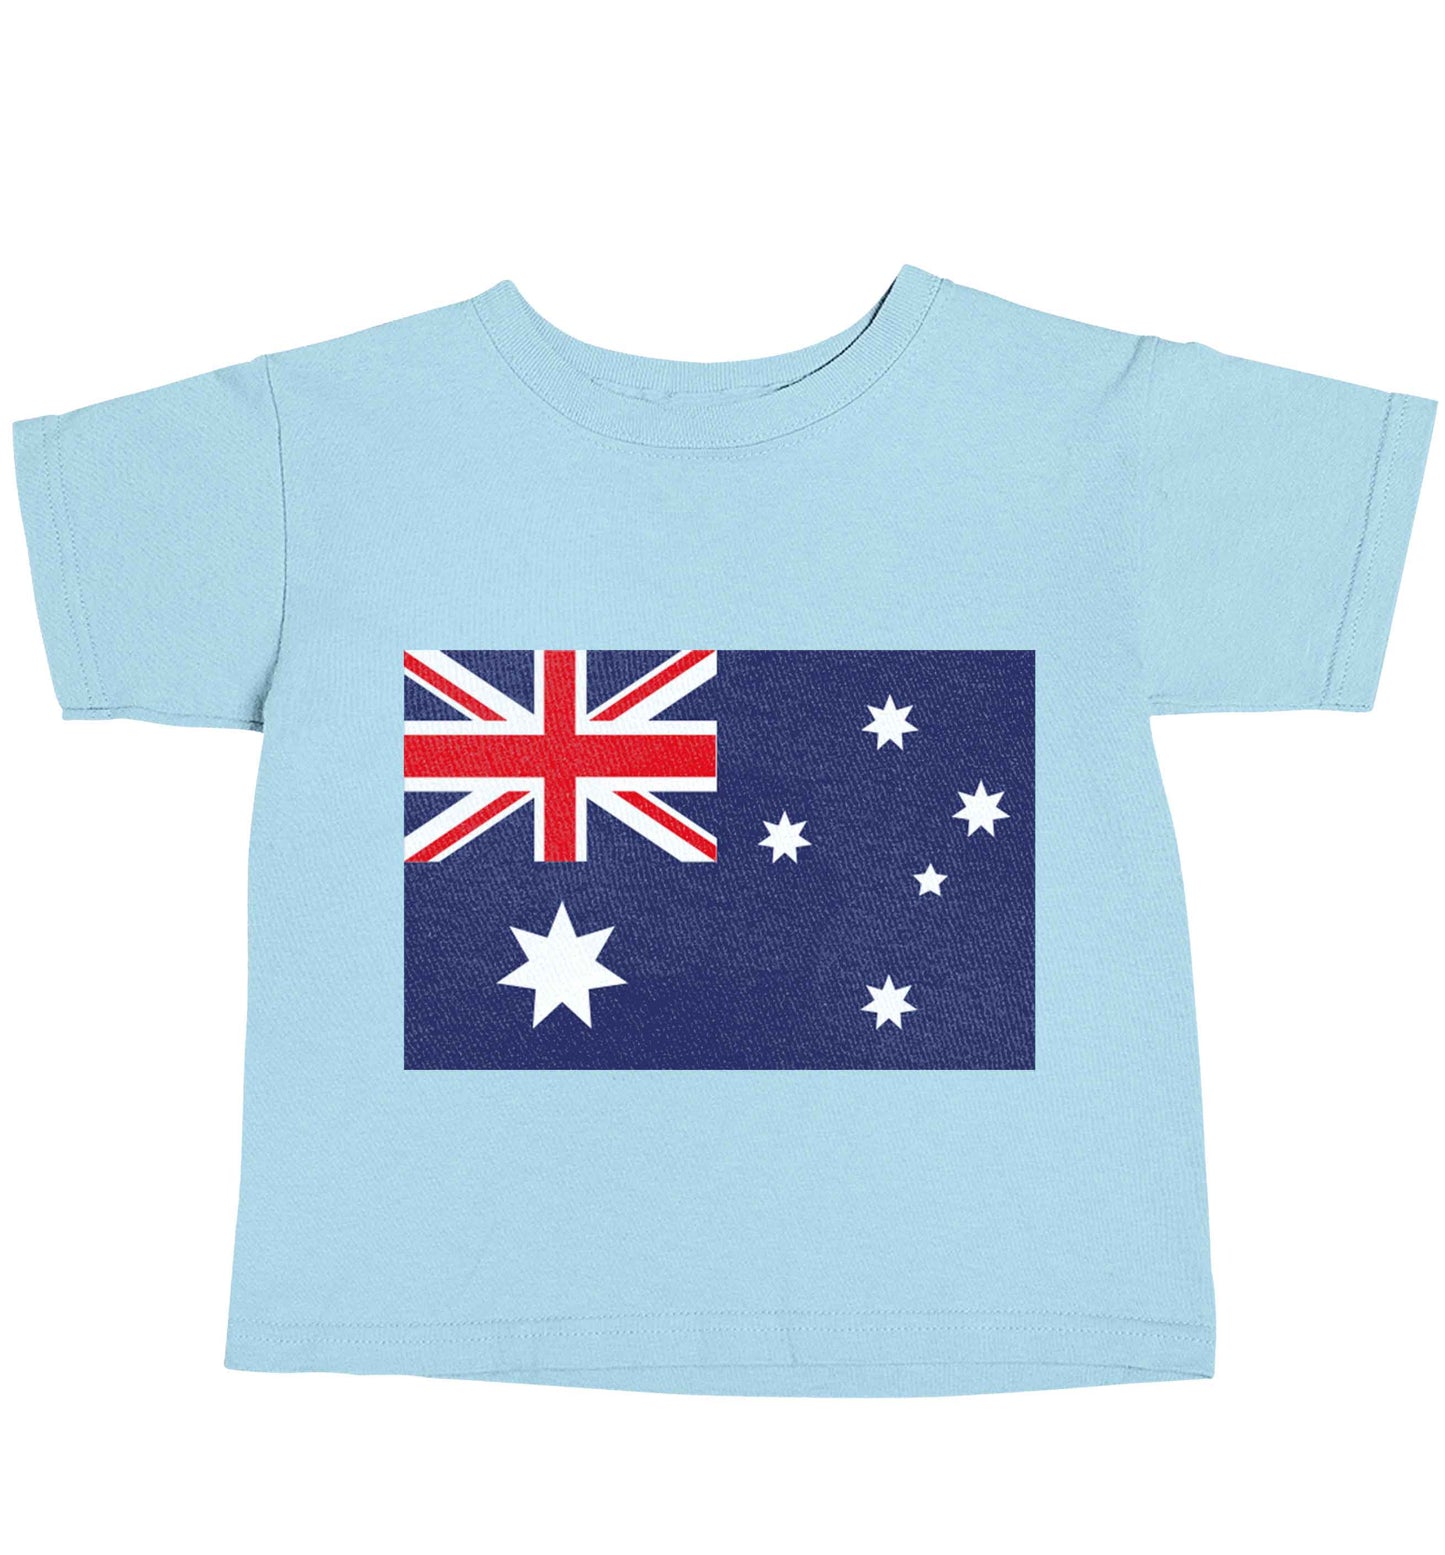 Australian Flag light blue baby toddler Tshirt 2 Years